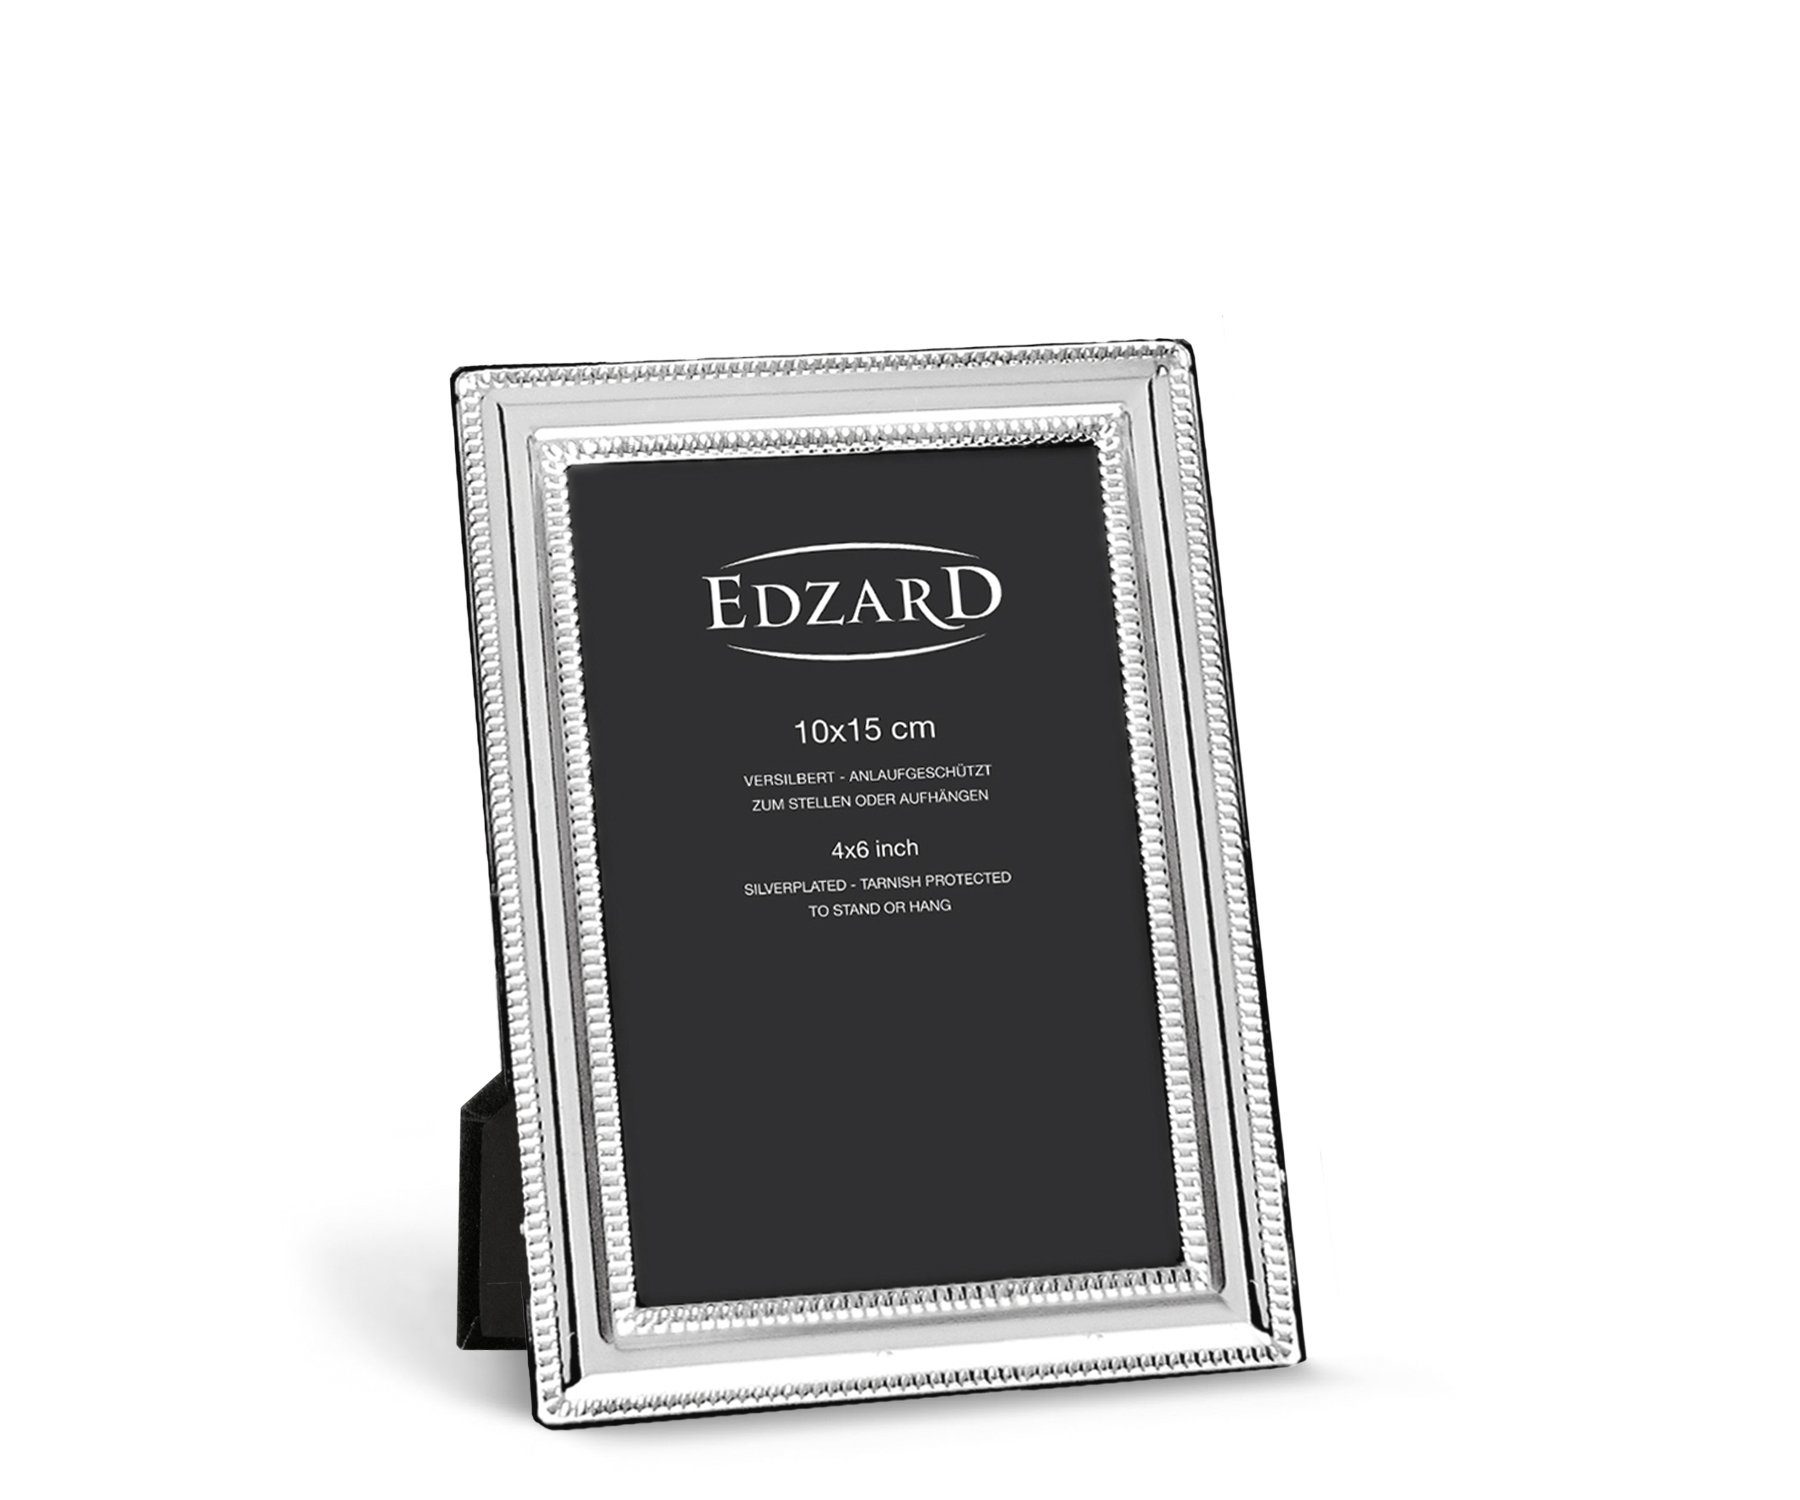 EDZARD Bilderrahmen Matera, versilbert und anlaufgeschützt, für 10x15 cm Foto